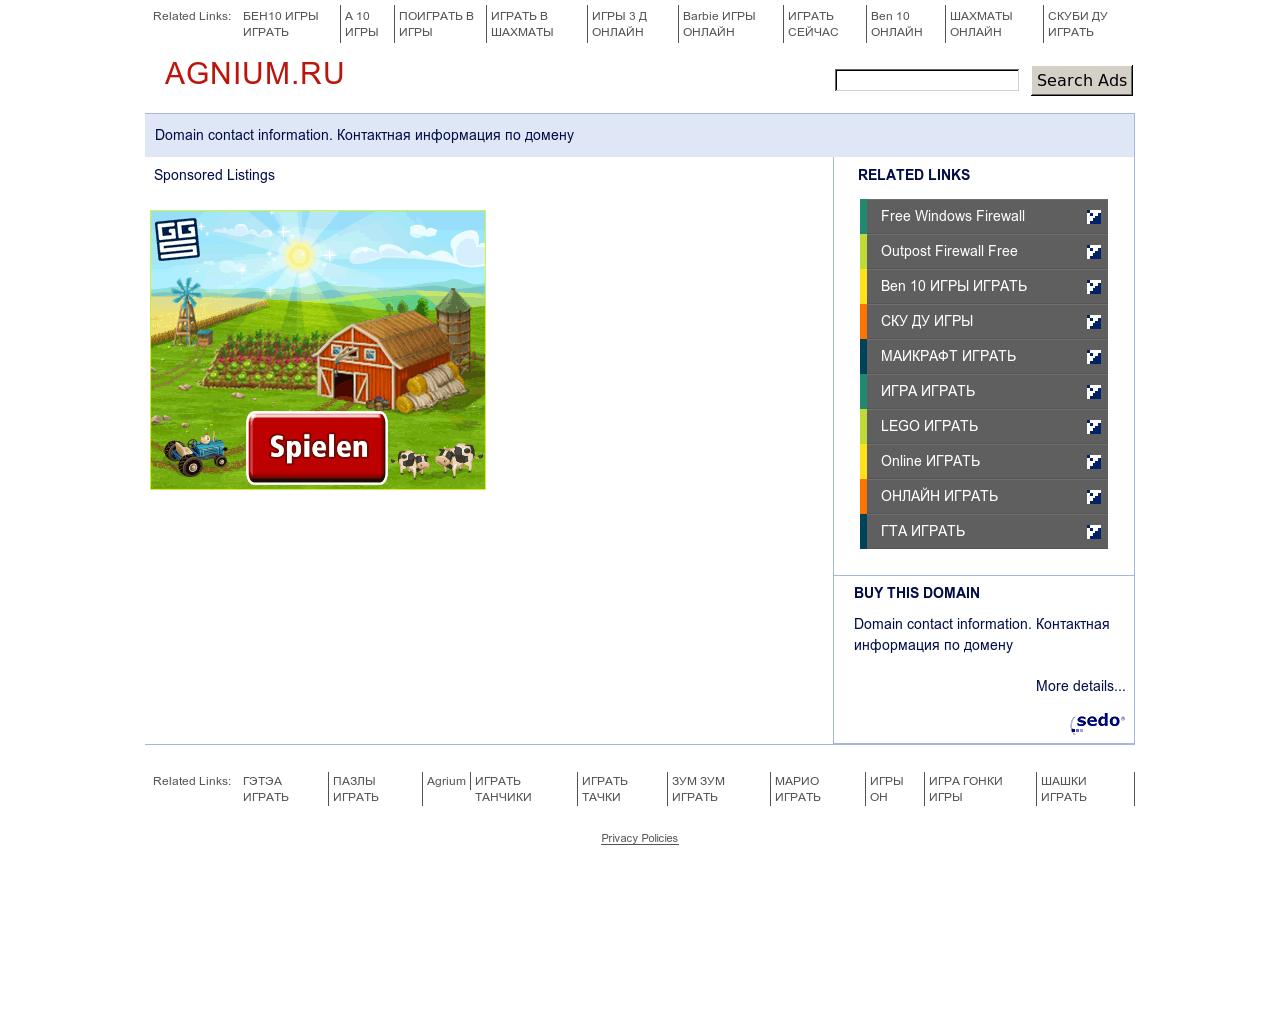 Изображение сайта agnium.ru в разрешении 1280x1024